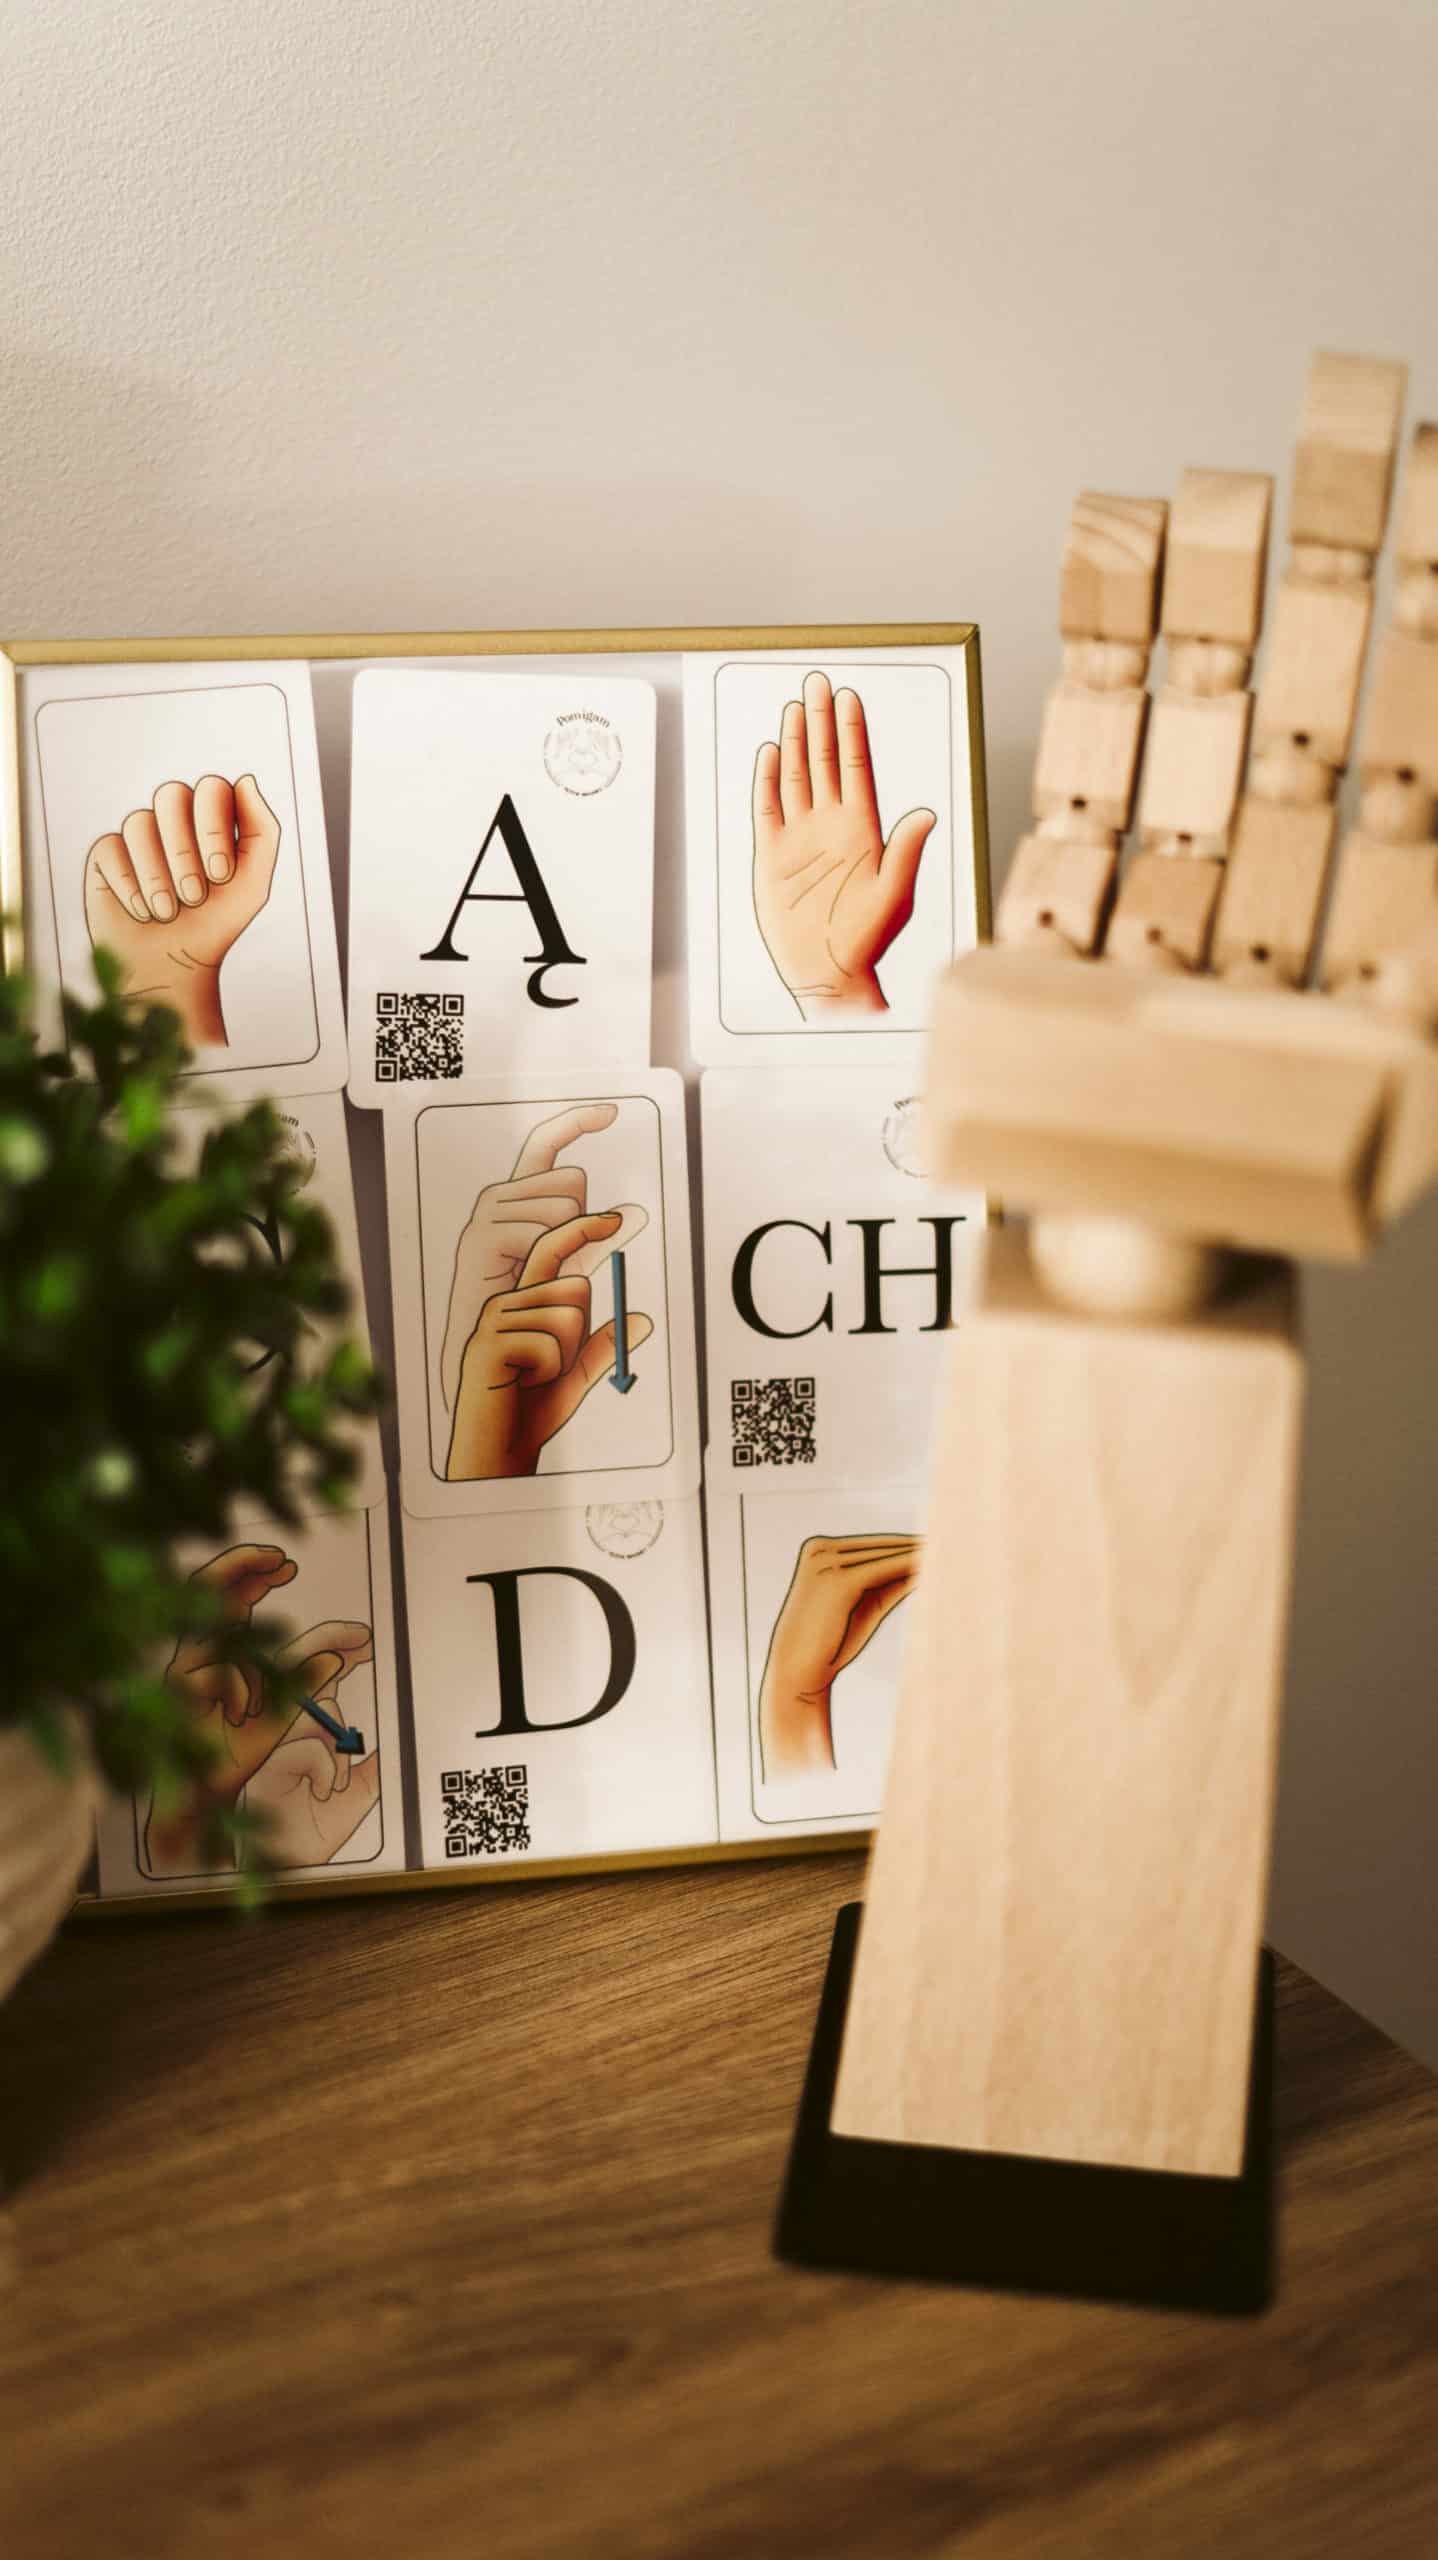 materiały dydaktyczne do nauki języka migowego